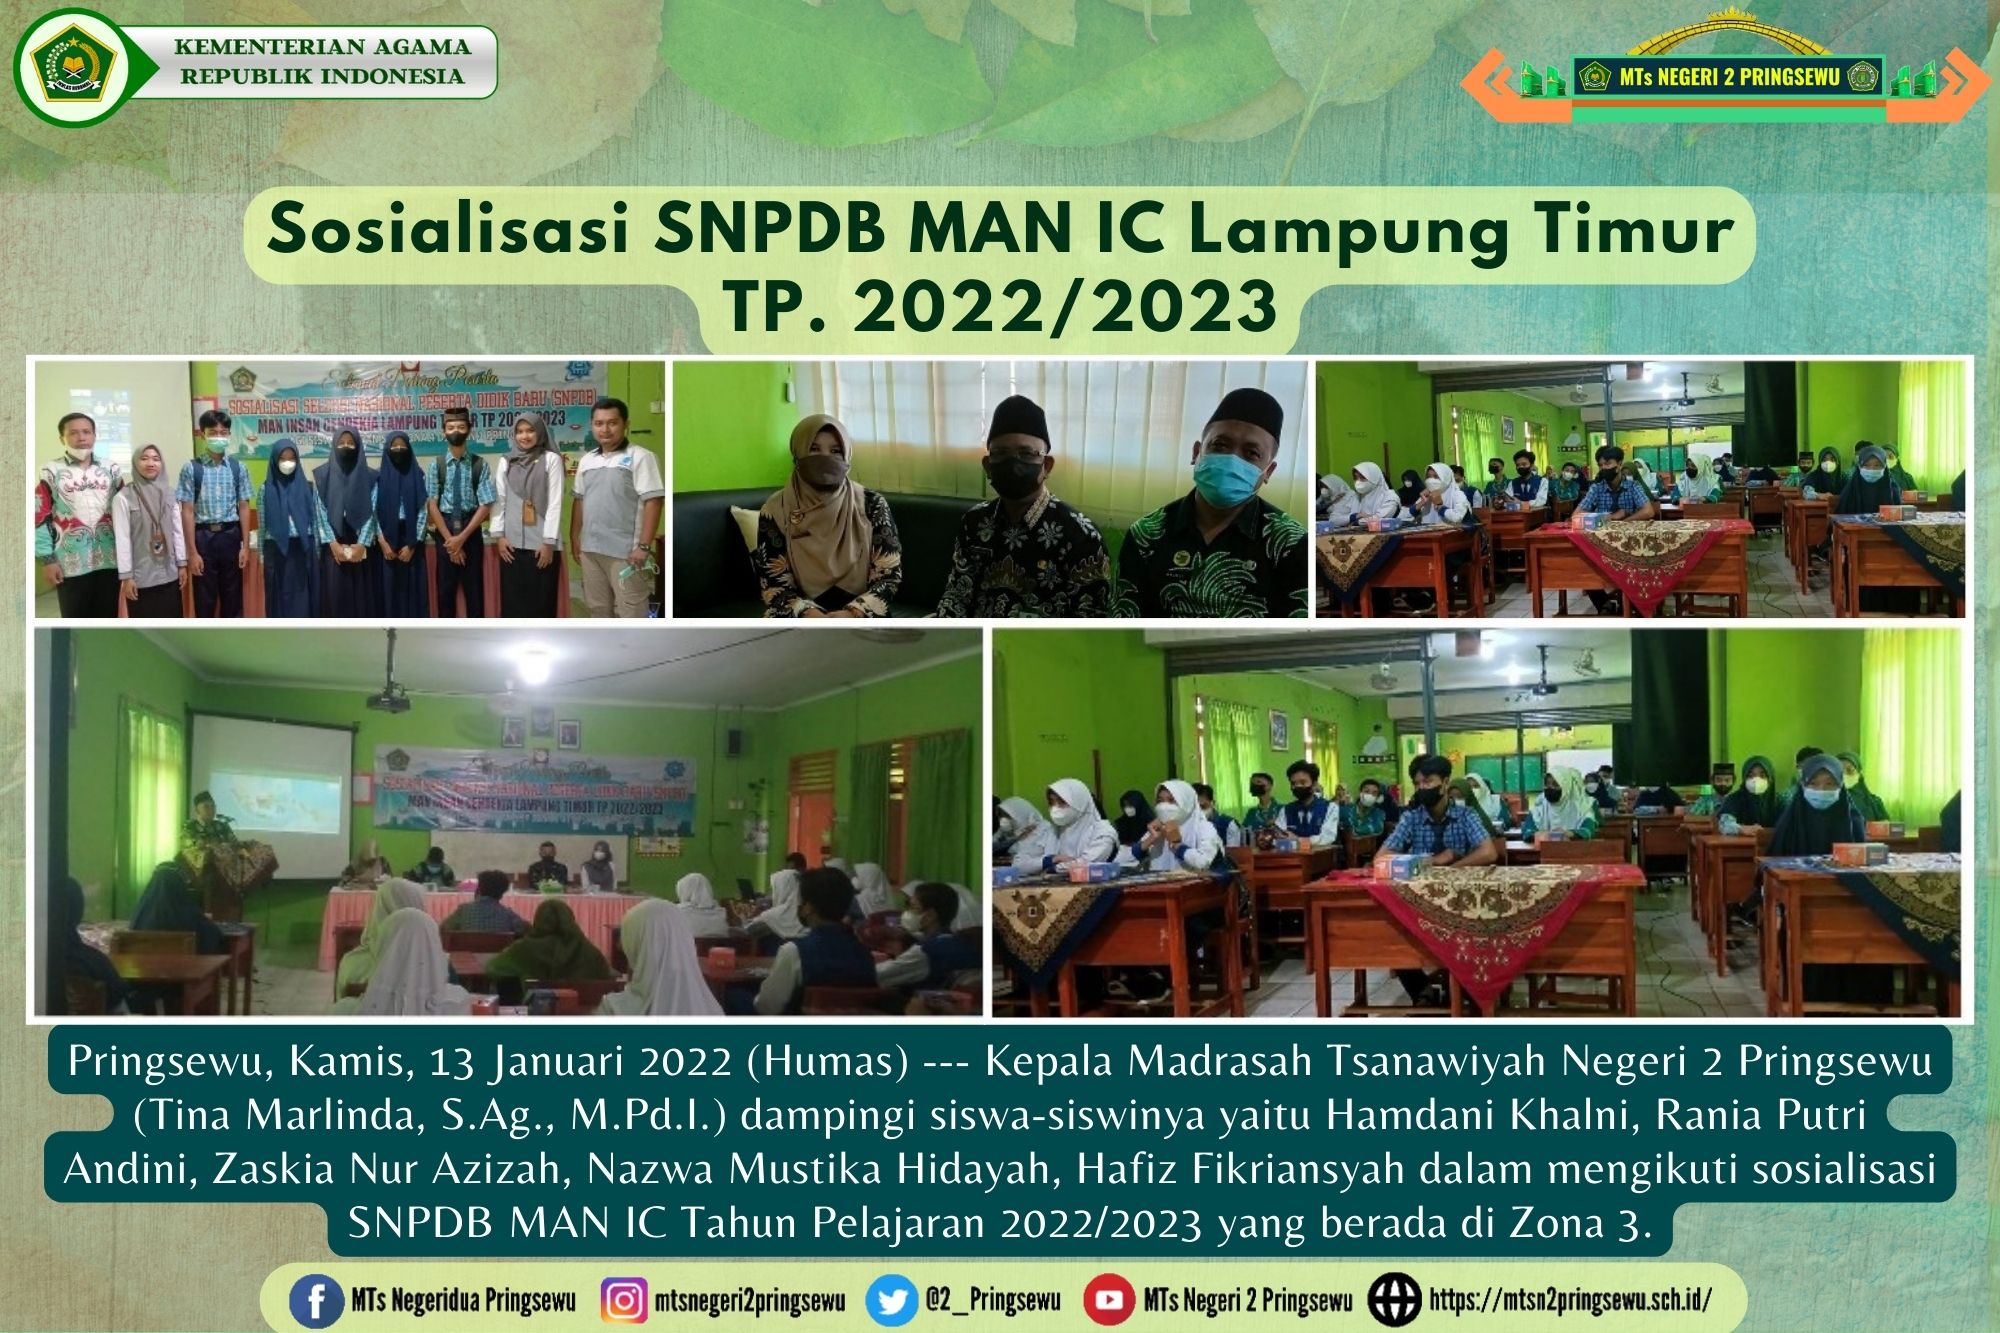 Siswa-Siswi MTs N 2 Pringsewu Ikuti Sosialisasi SNPDB MAN IC Lampung Timur